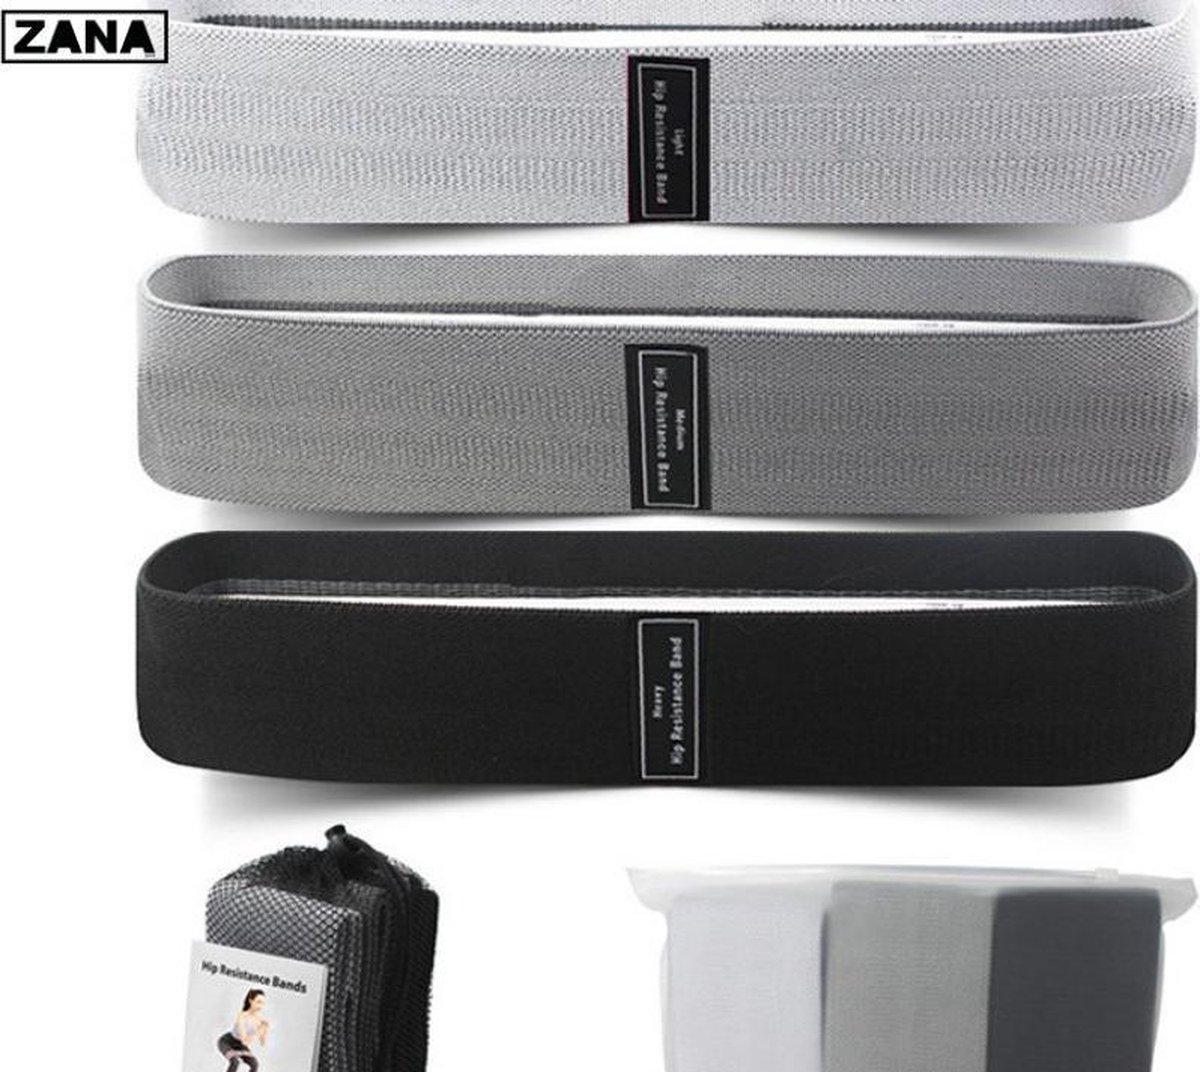 ZANA Sports - Weerstandsbanden - 3-delige set - Resistance band - Fitness elastiek - inclusief draagtas - zwart/grijs/lichtgrijs - ultimate performance